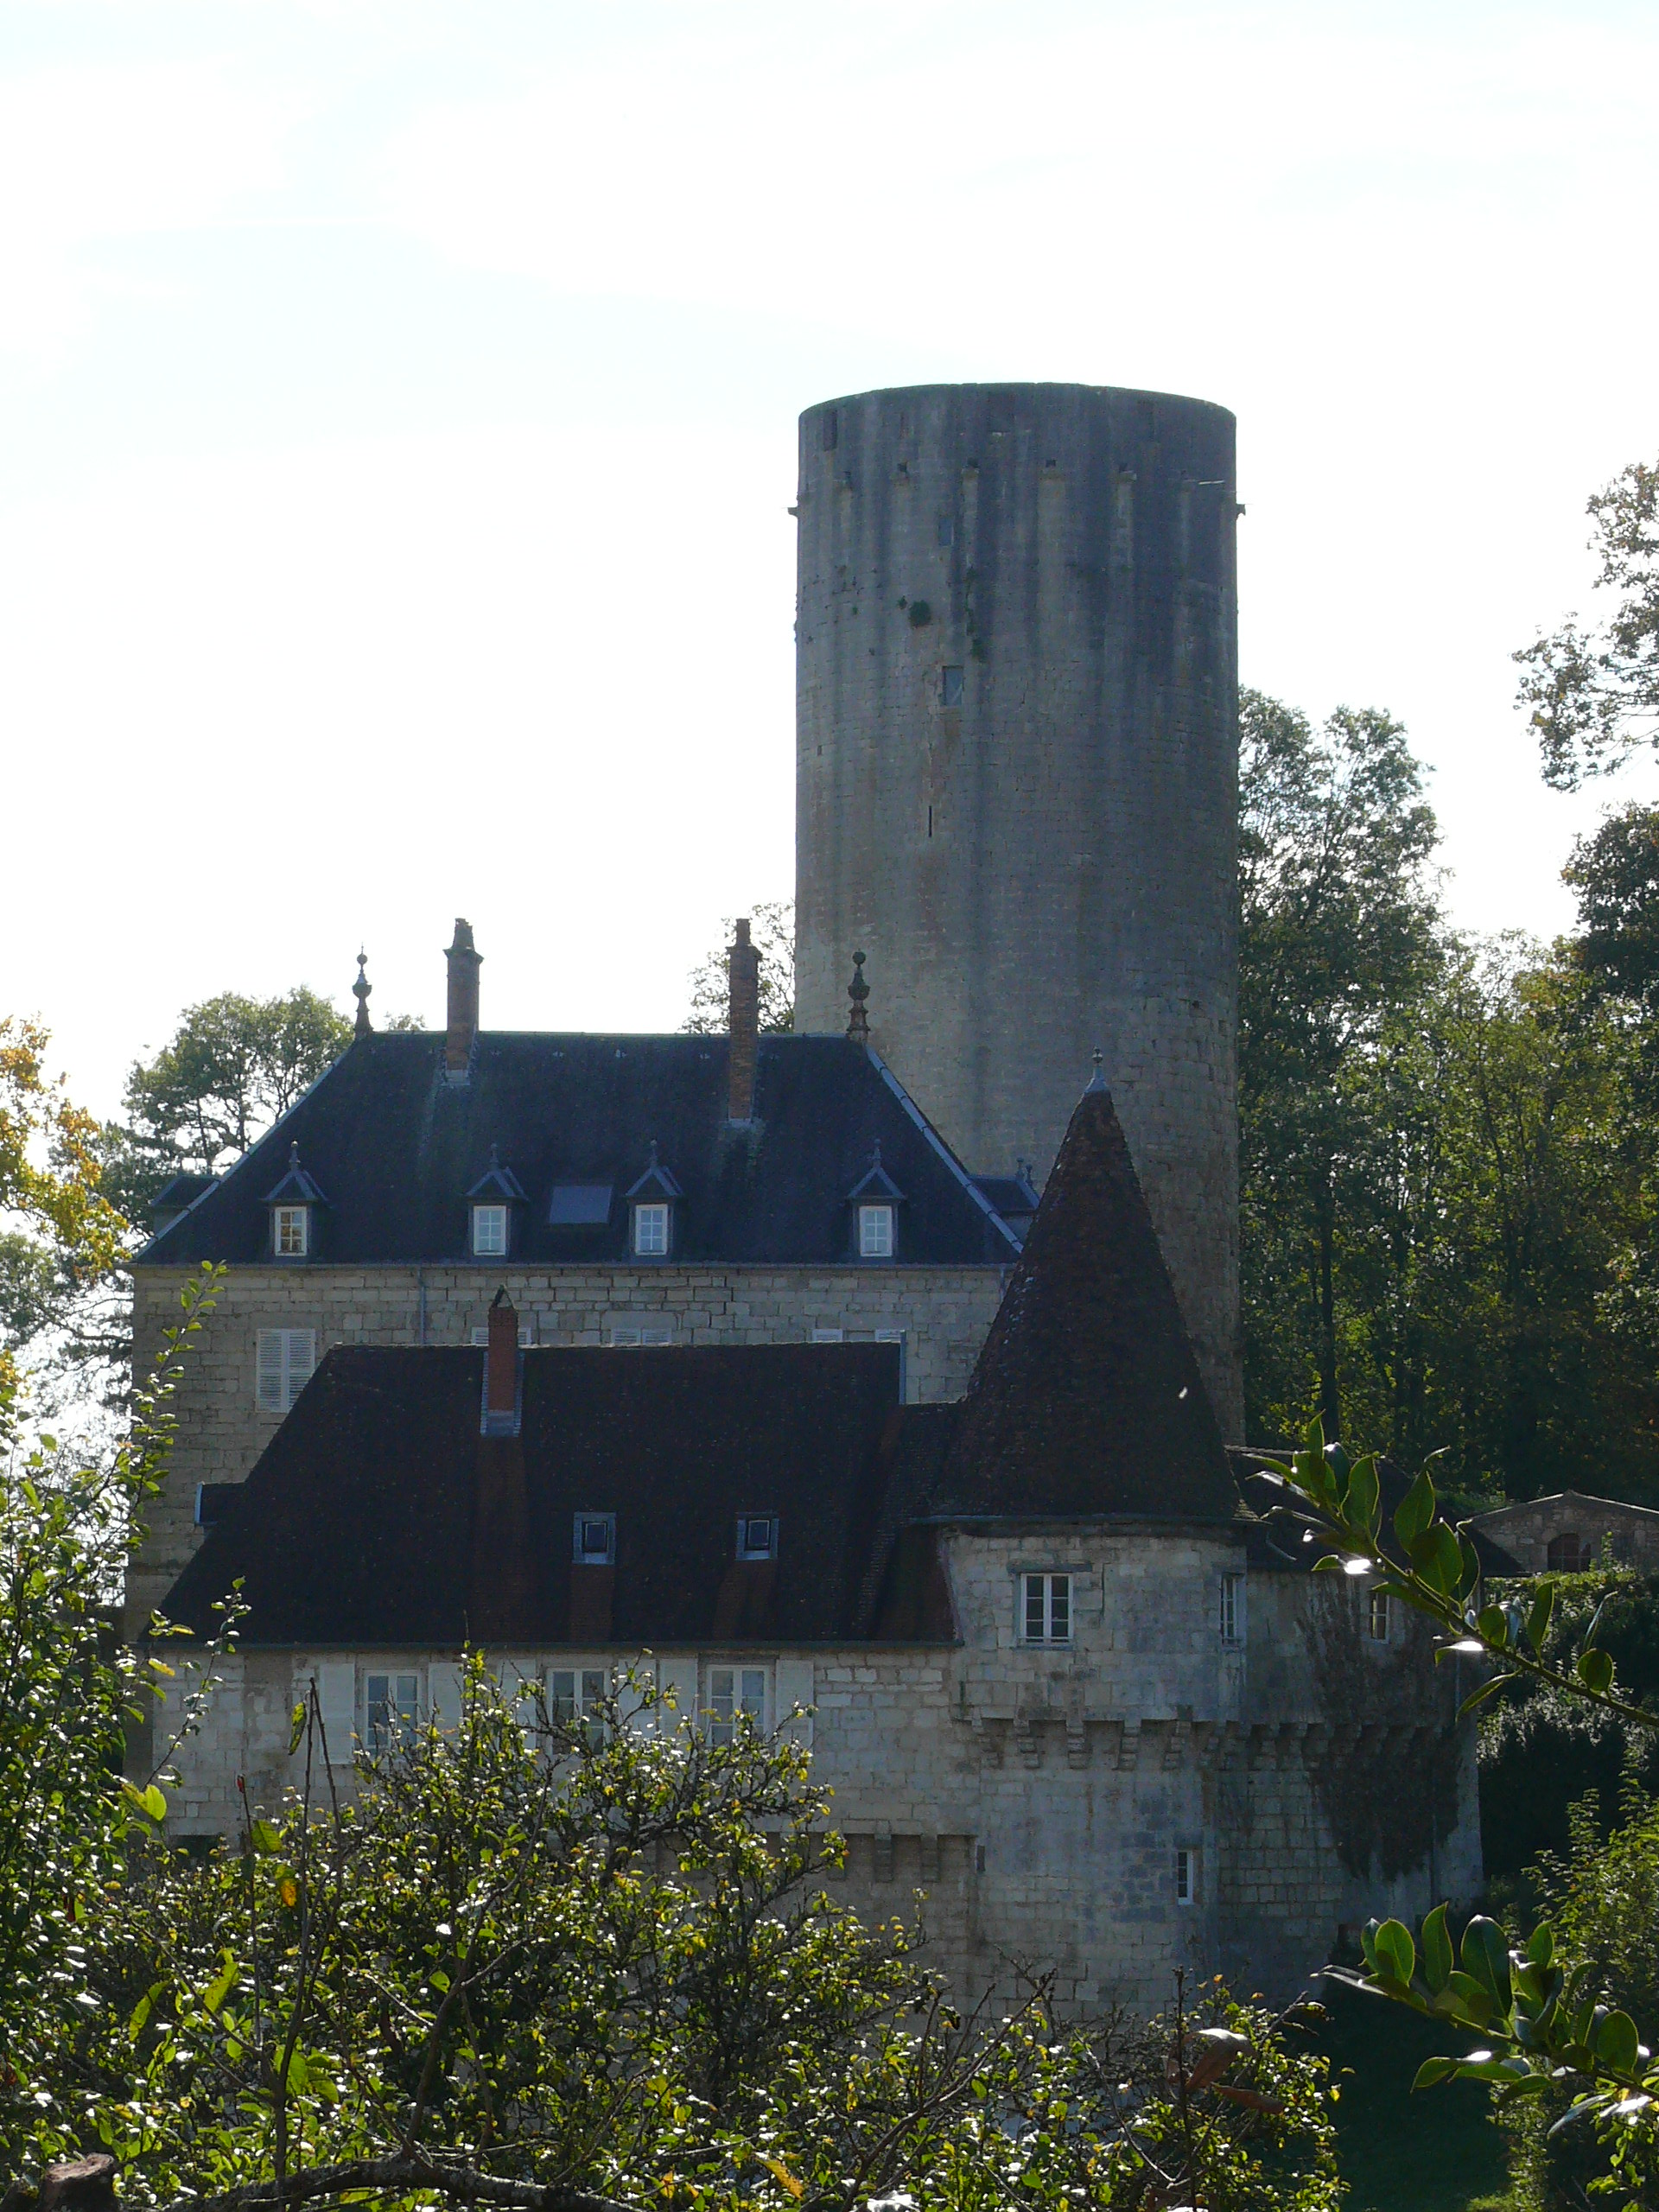 Château de Ray sur Saône